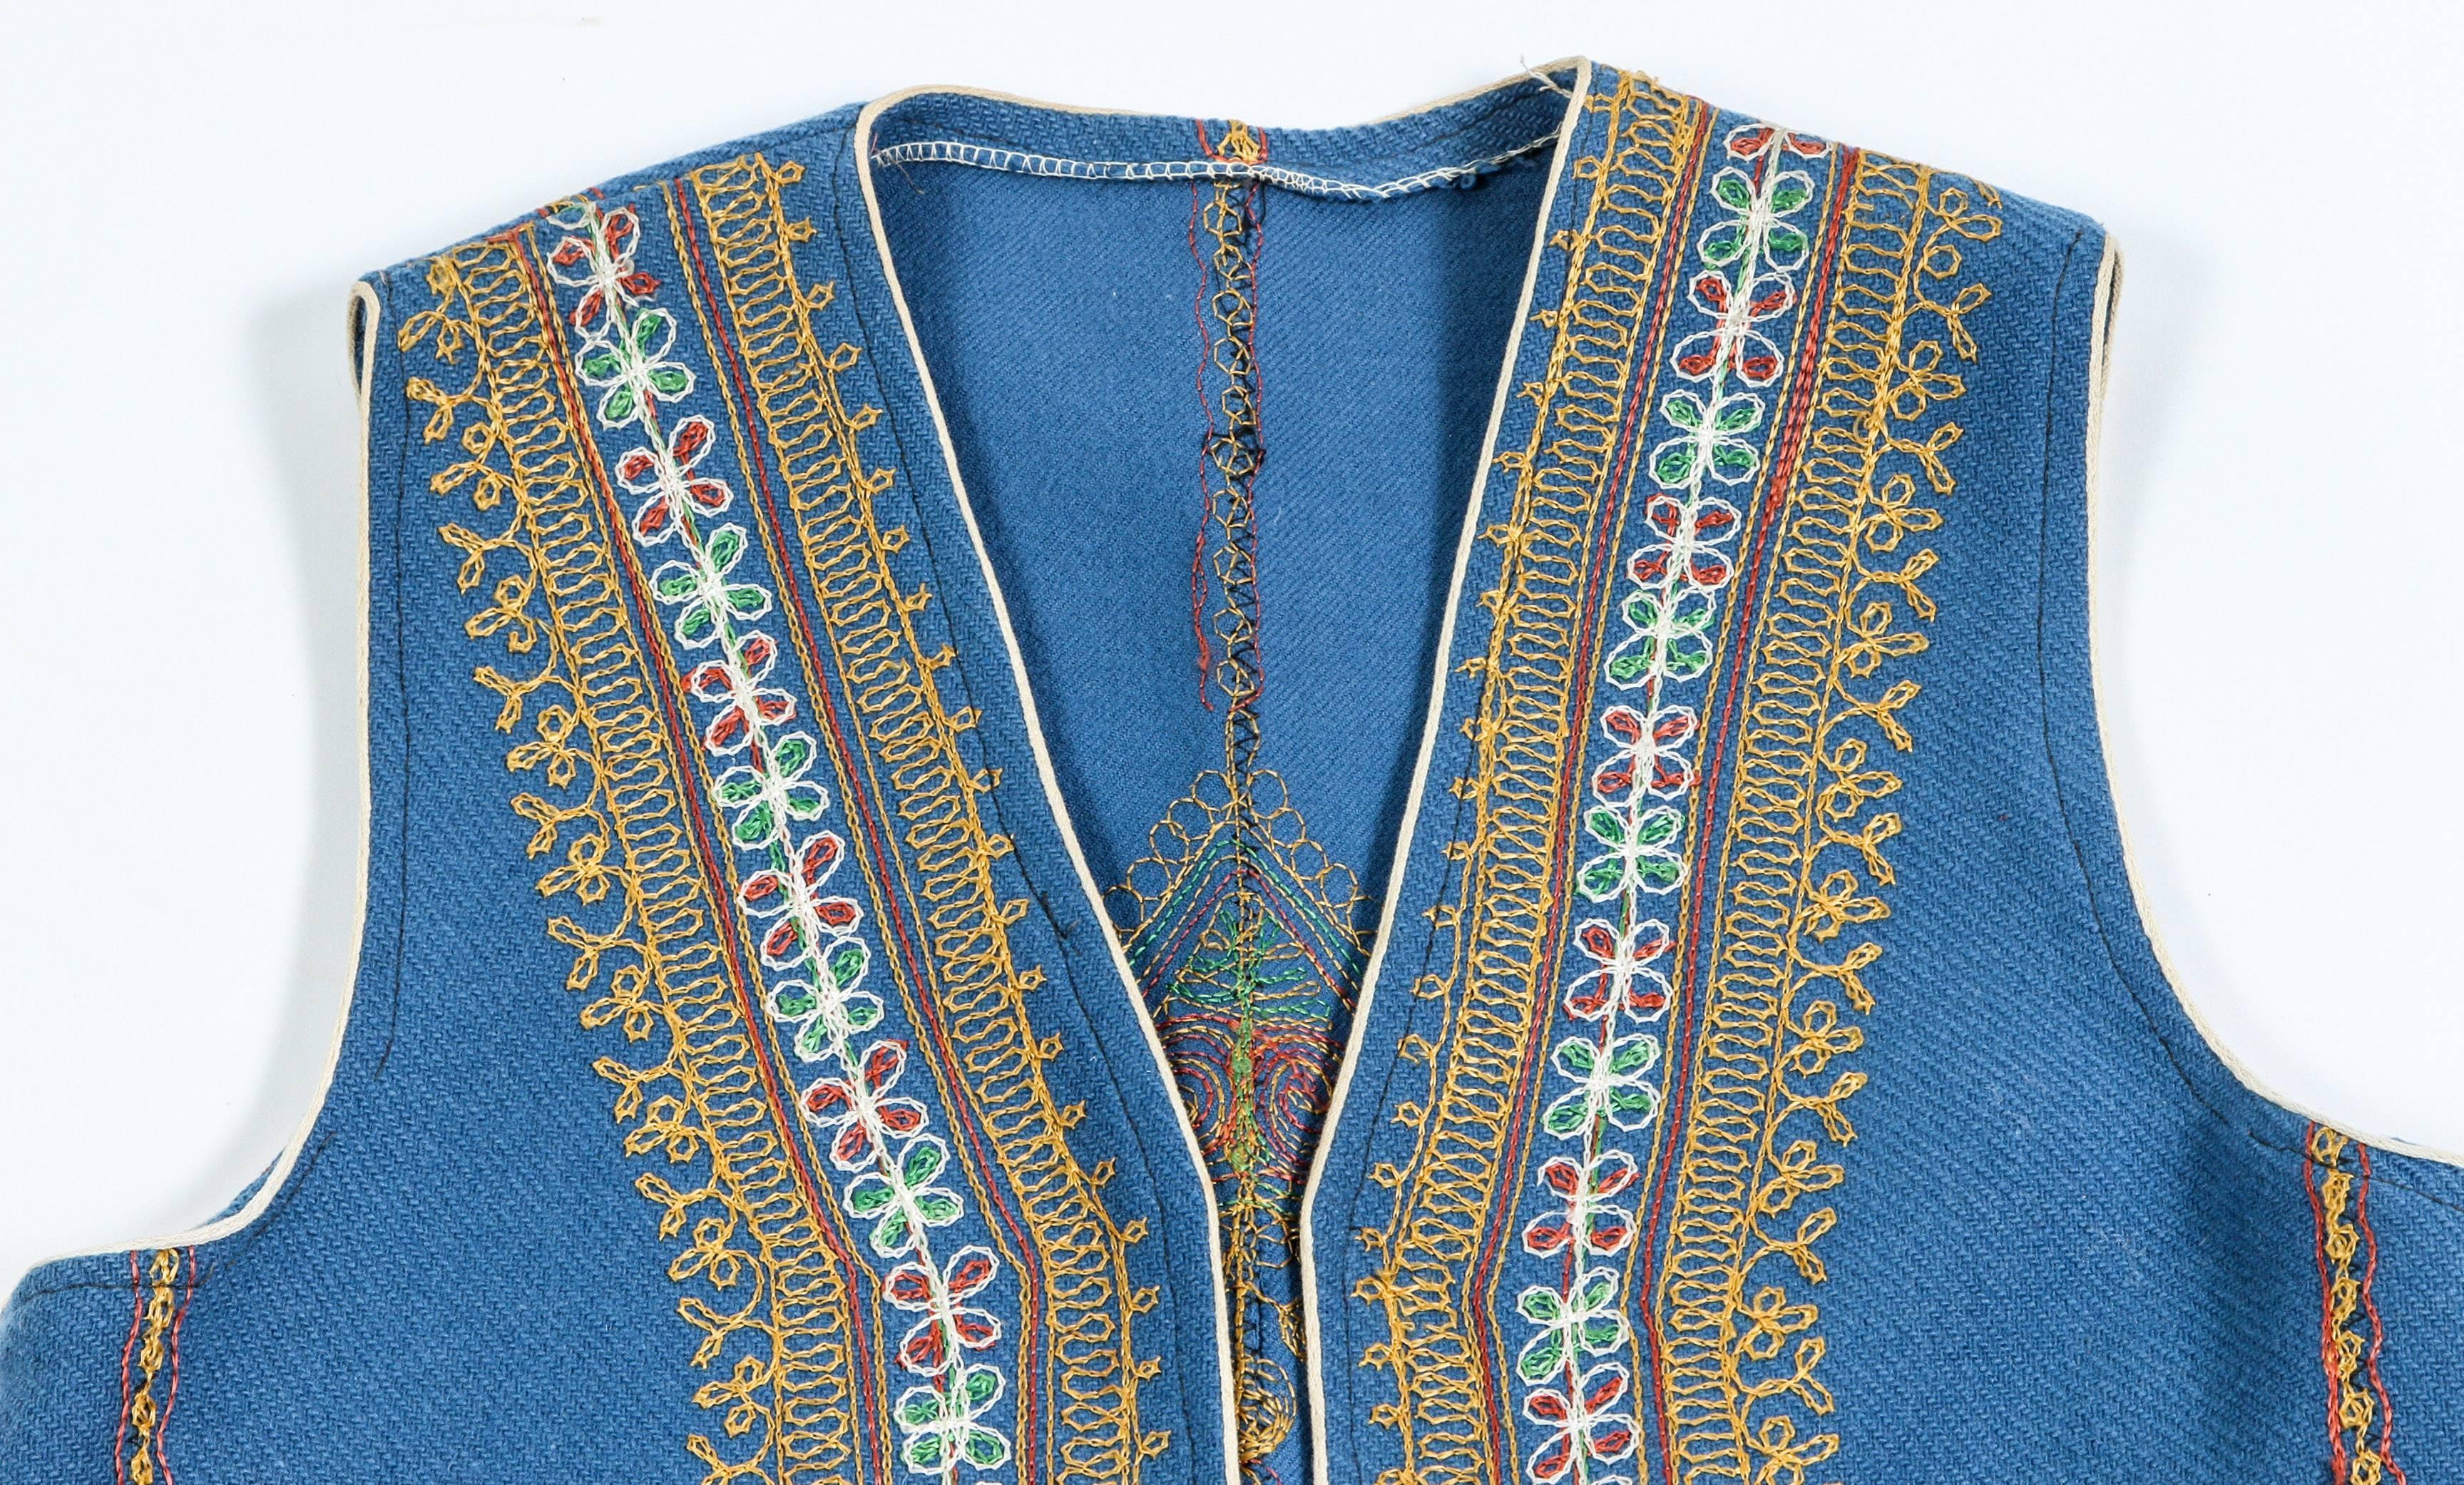 Authentique gilet vintage ethnique turc en bleu décoré de broderies élaborées et de deux poches,
Fait partie du costume traditionnel turc. 
Mesures : 
hauteur 24.5